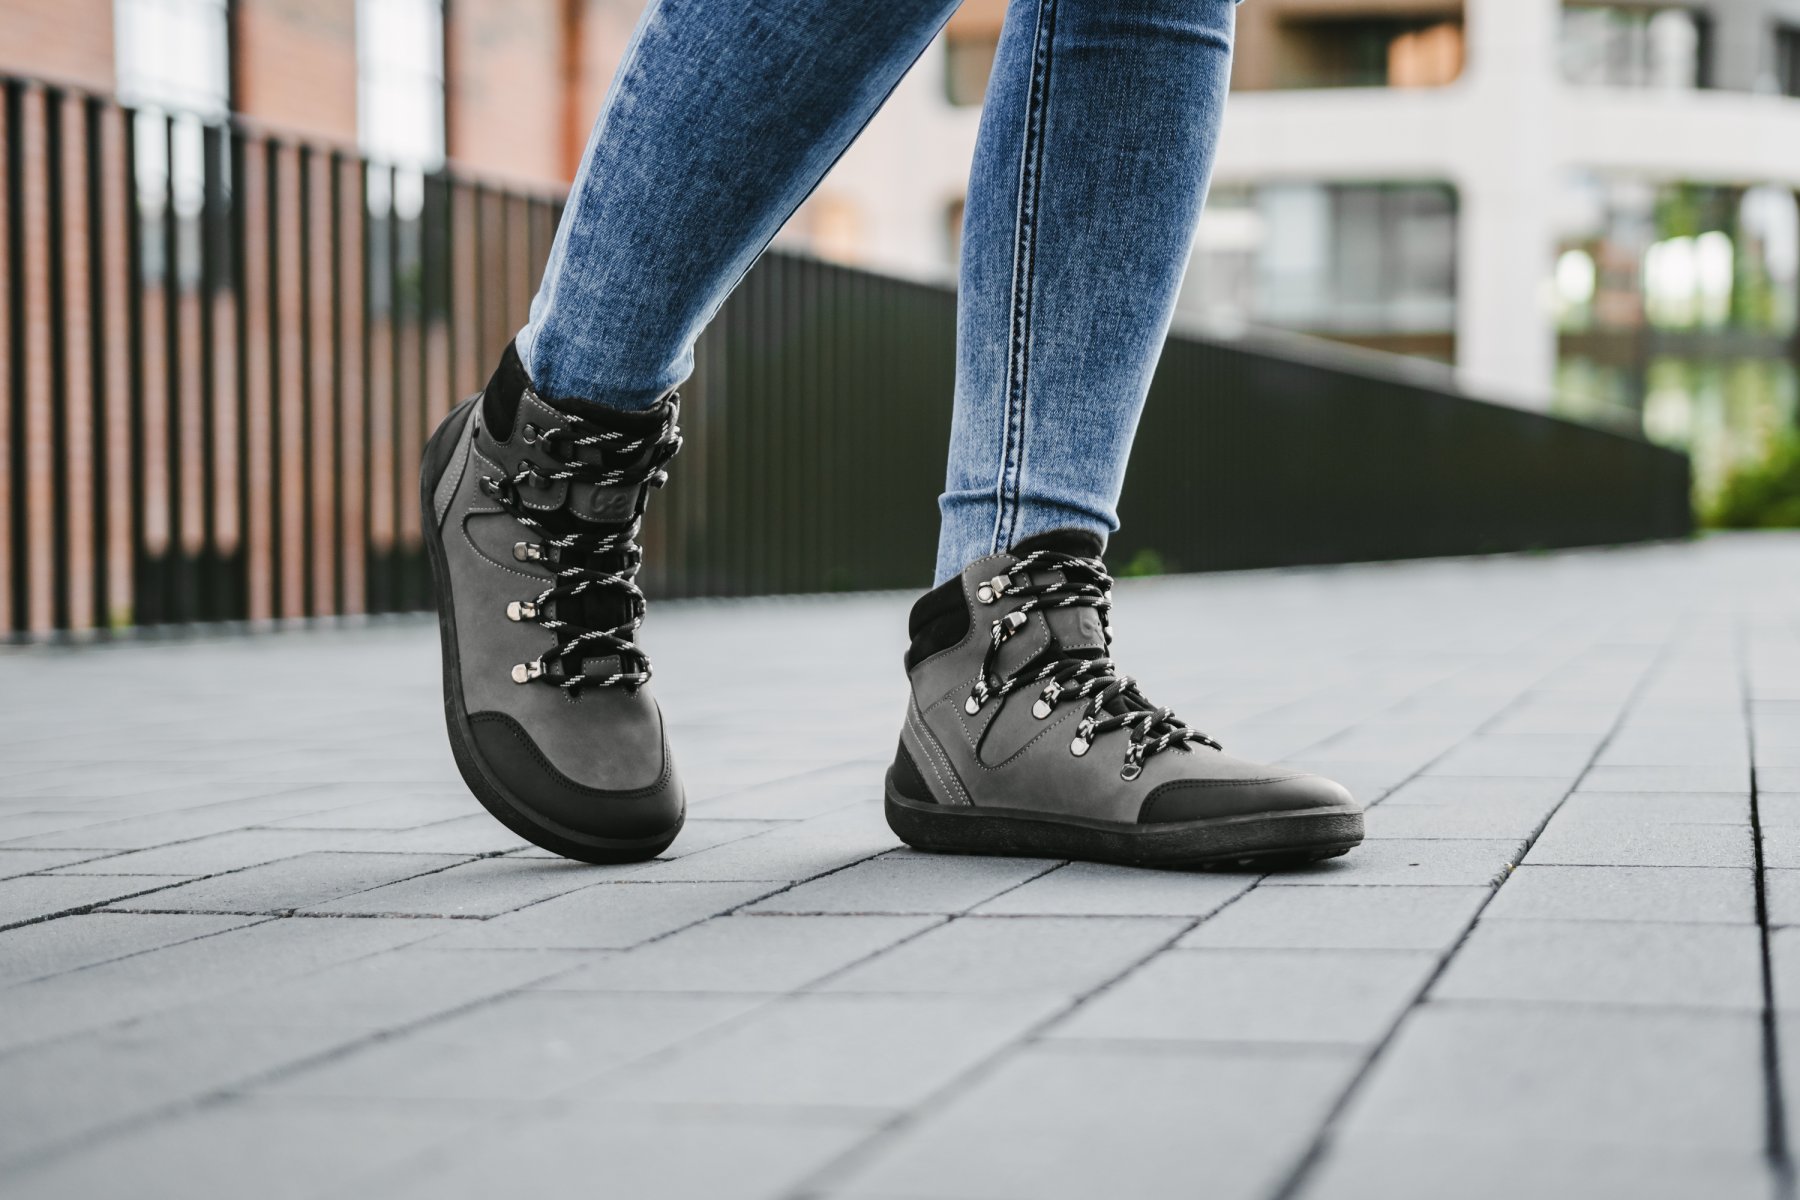 Barefoot Shoes Be Lenka Ranger 2.0 - Grey & Black | Be Lenka